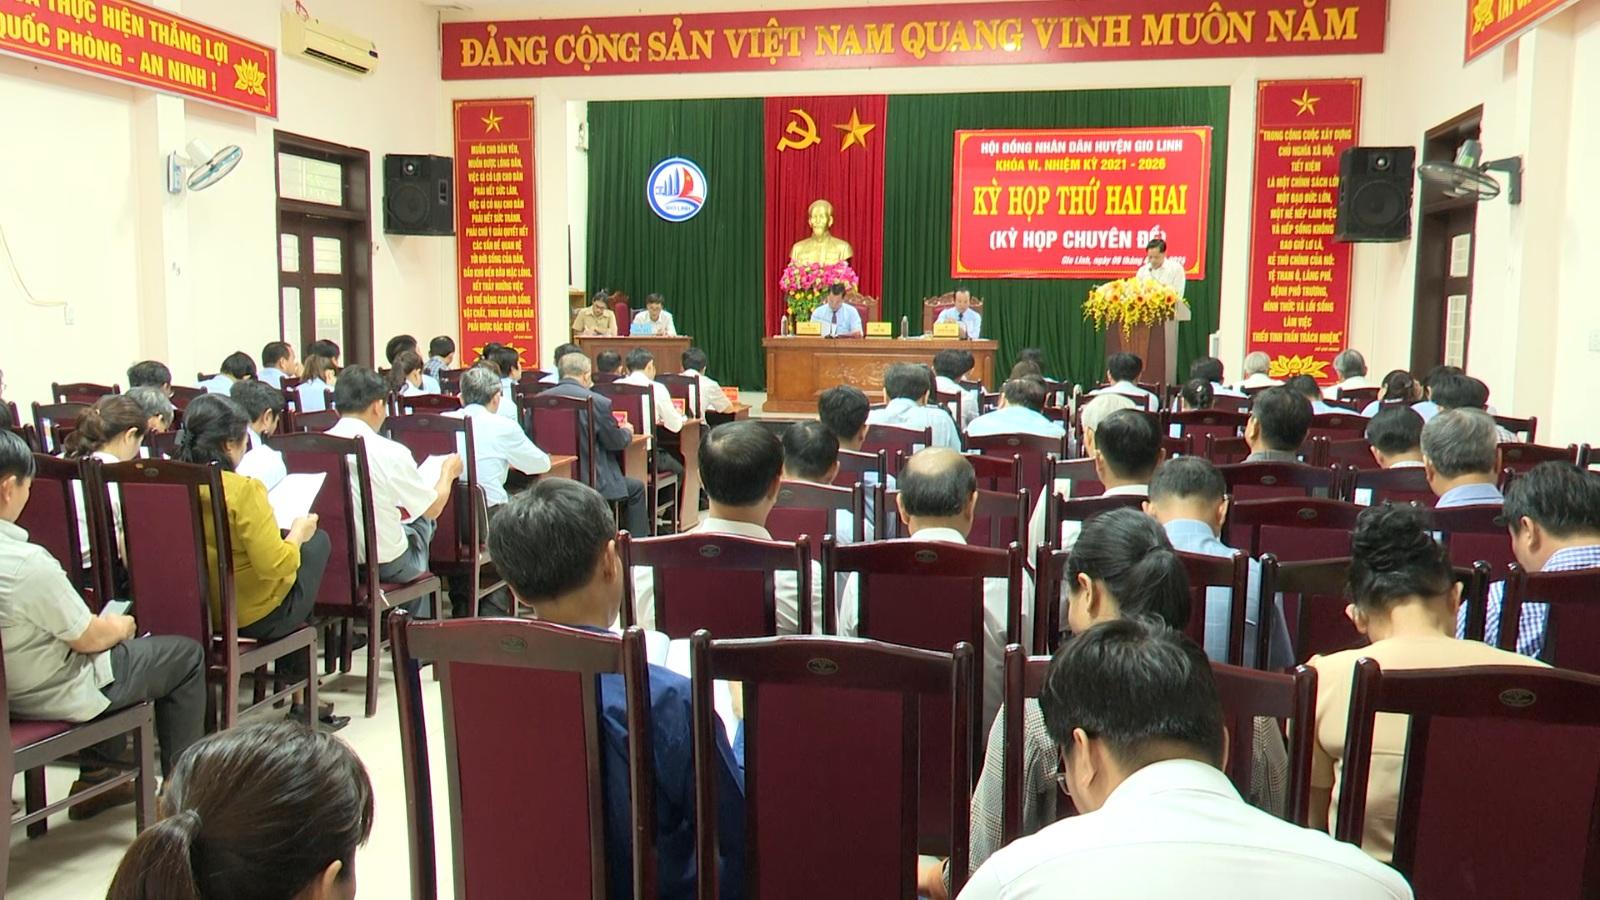 HĐND huyện Gio Linh tổ chức kỳ họp thứ 22 (kỳ họp chuyên đề), HĐND huyện khóa VI, nhiệm kỳ 2021-2026.